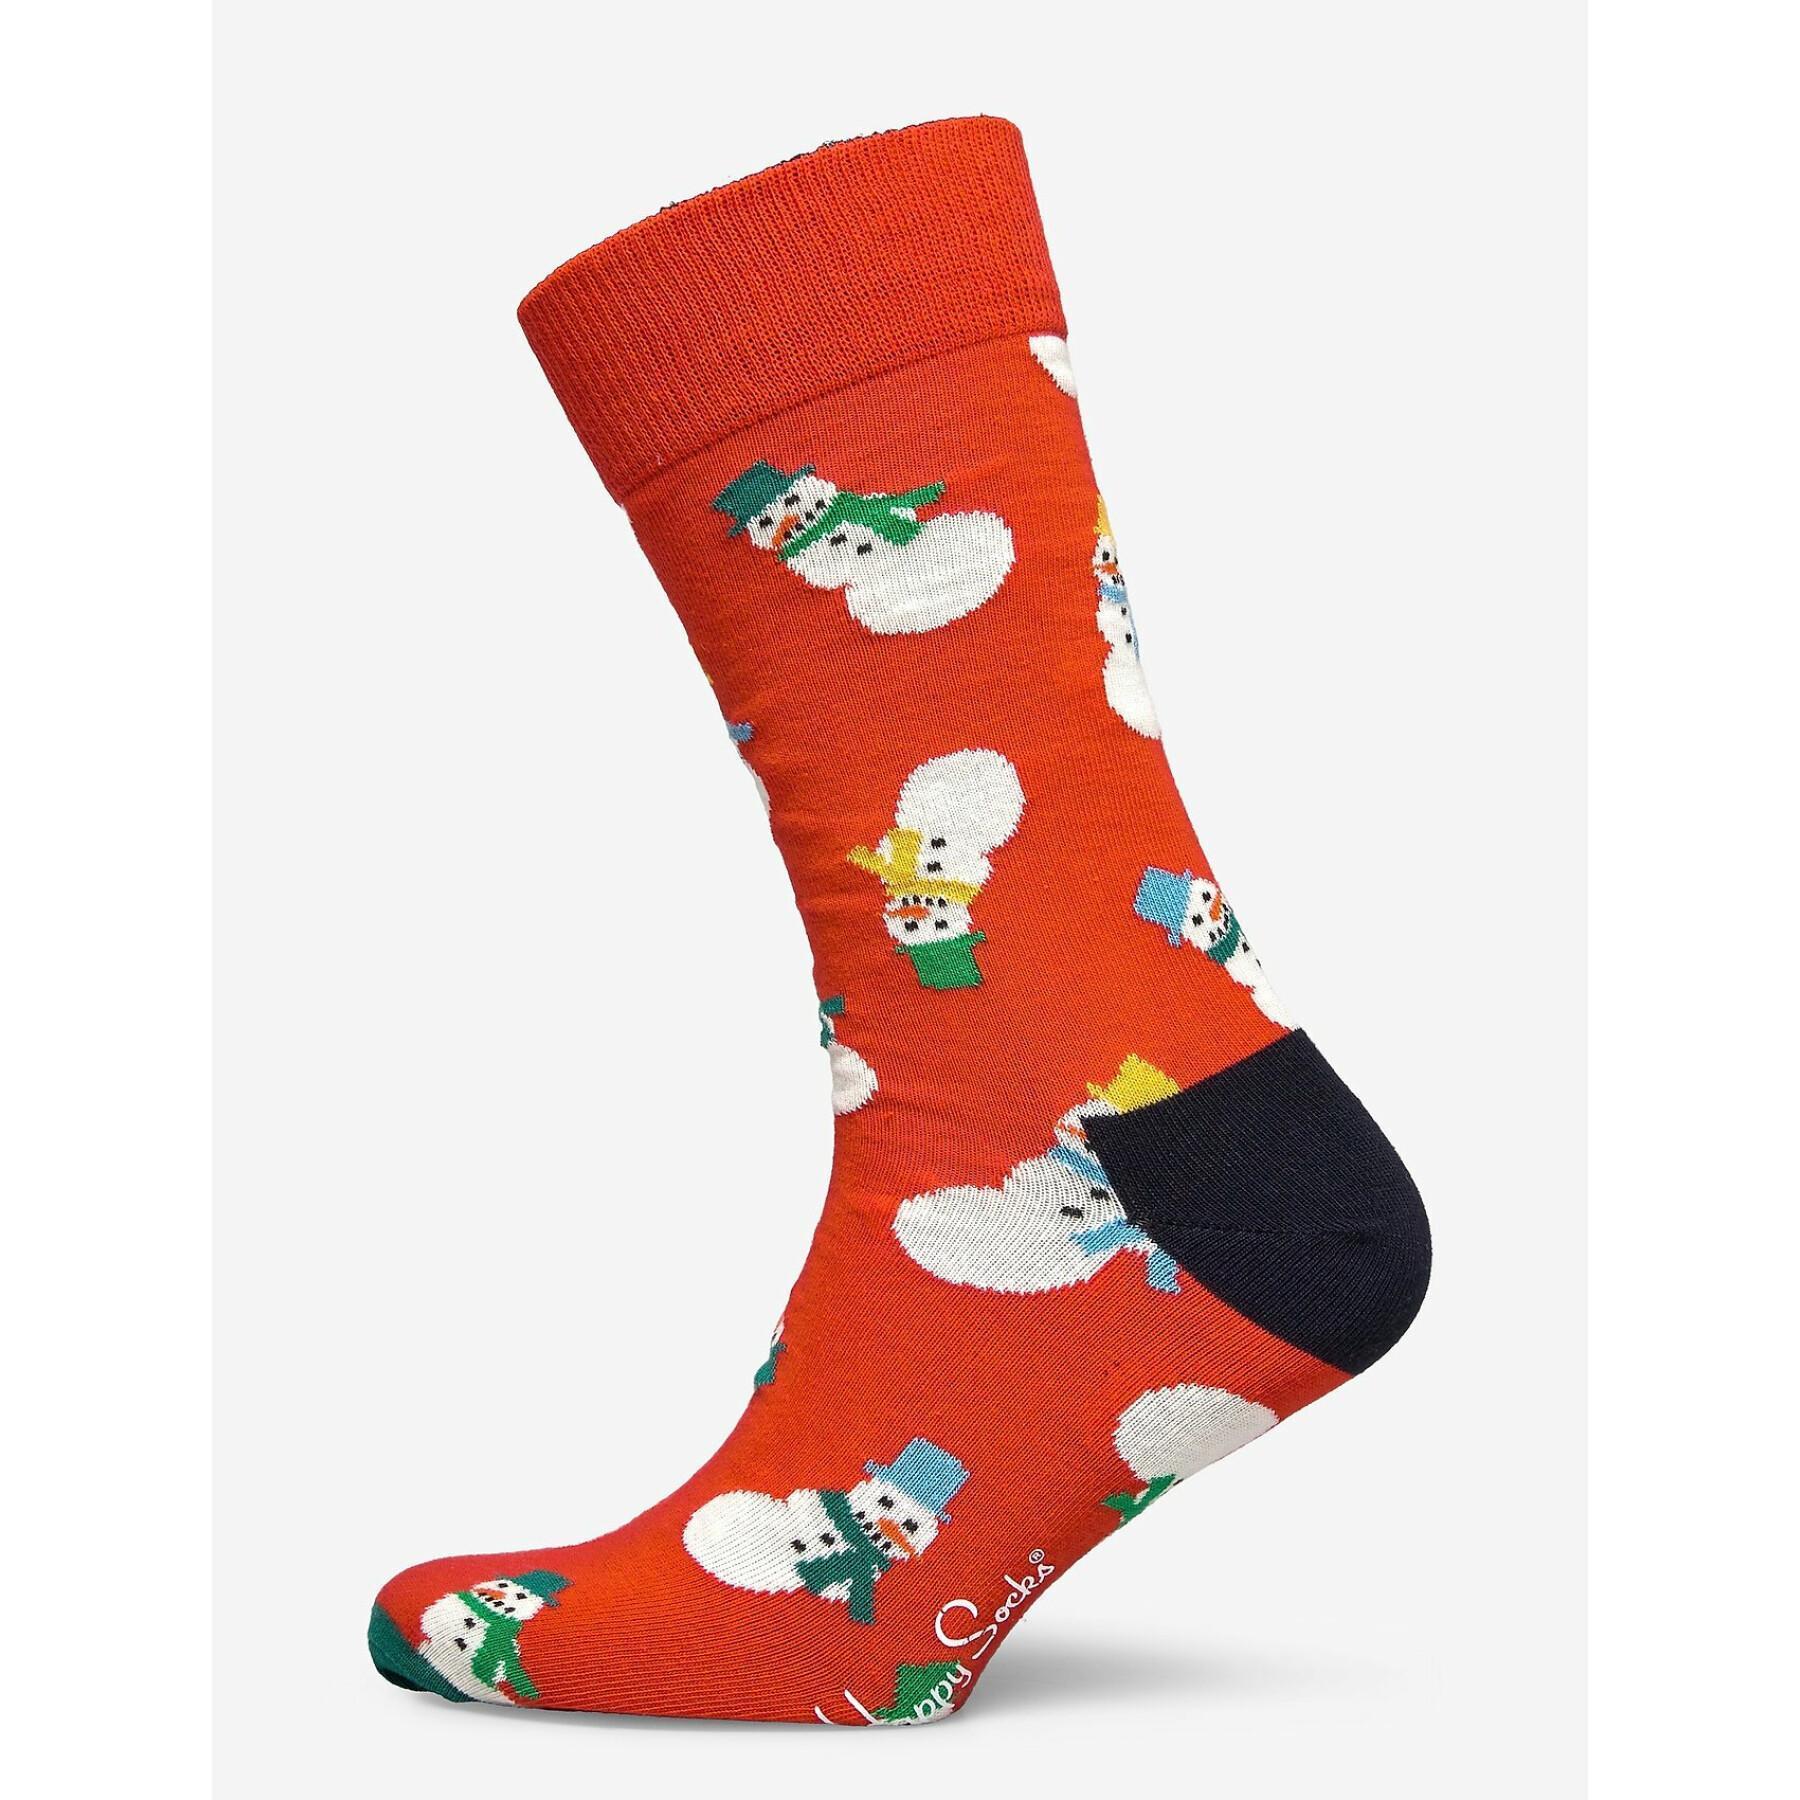 Skarpetki Happy socks Snowman